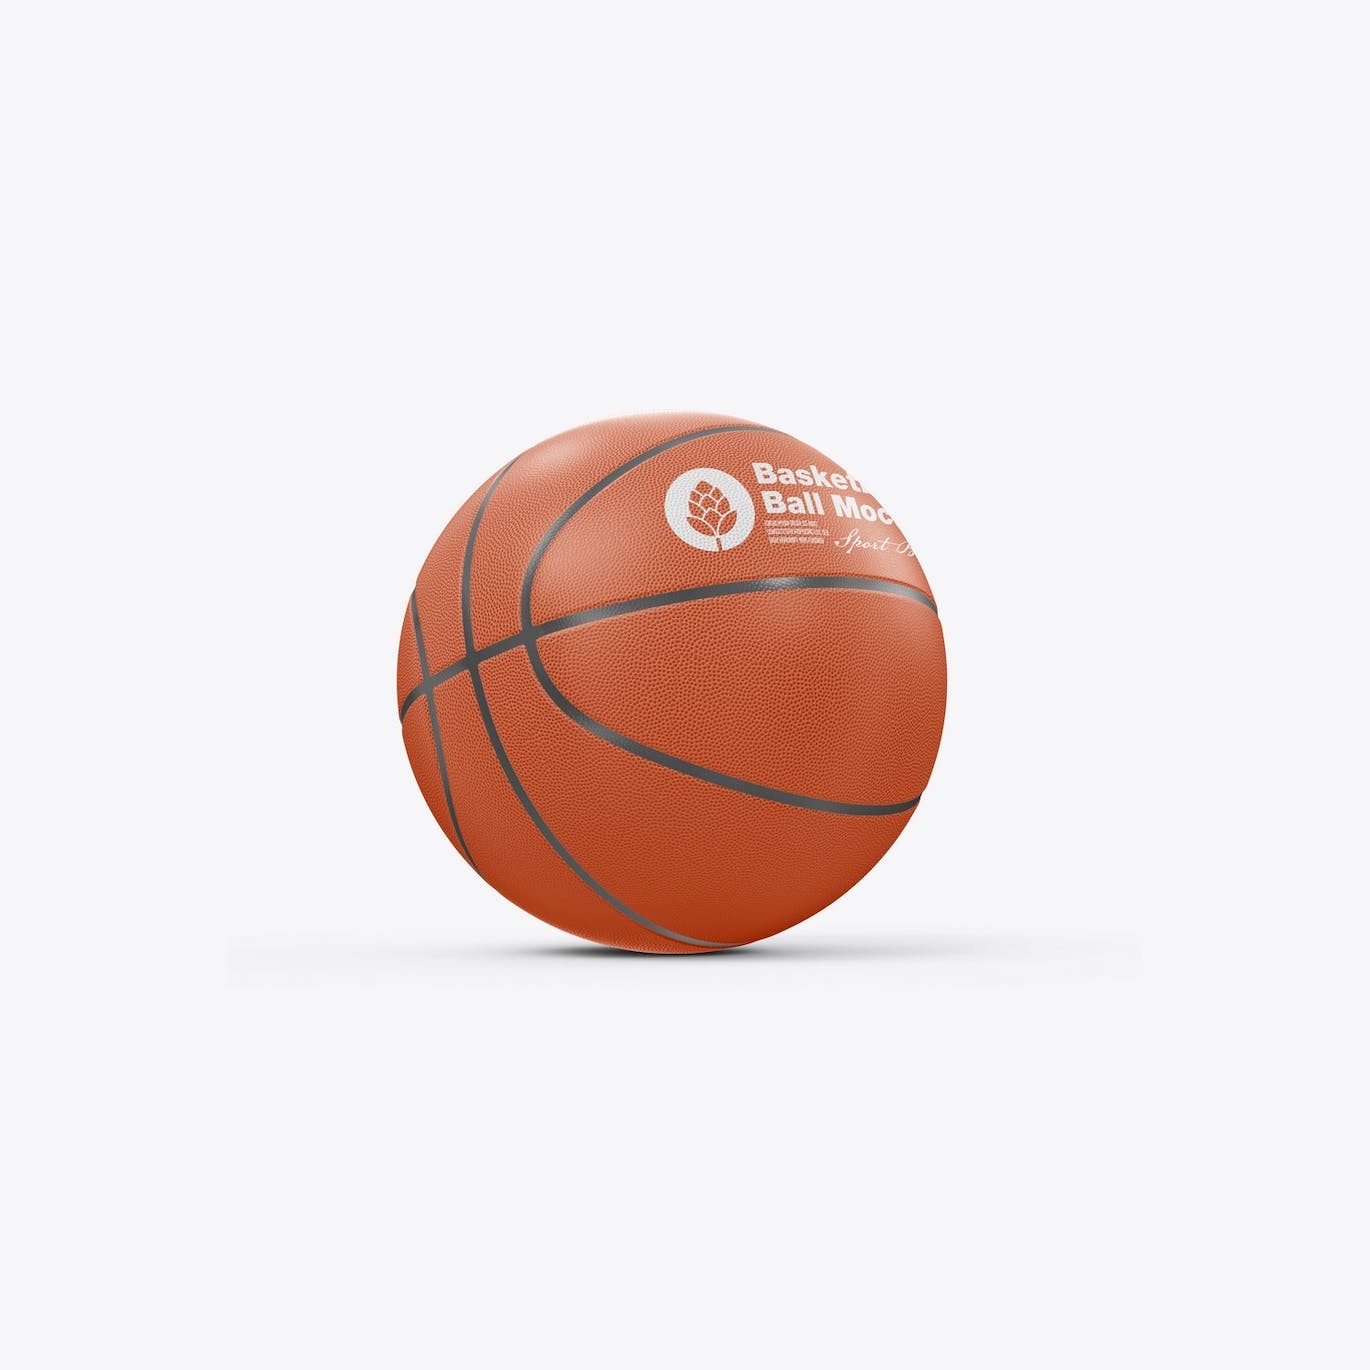 篮球运动品牌设计样机 Basketball Ball Mockup 样机素材 第13张